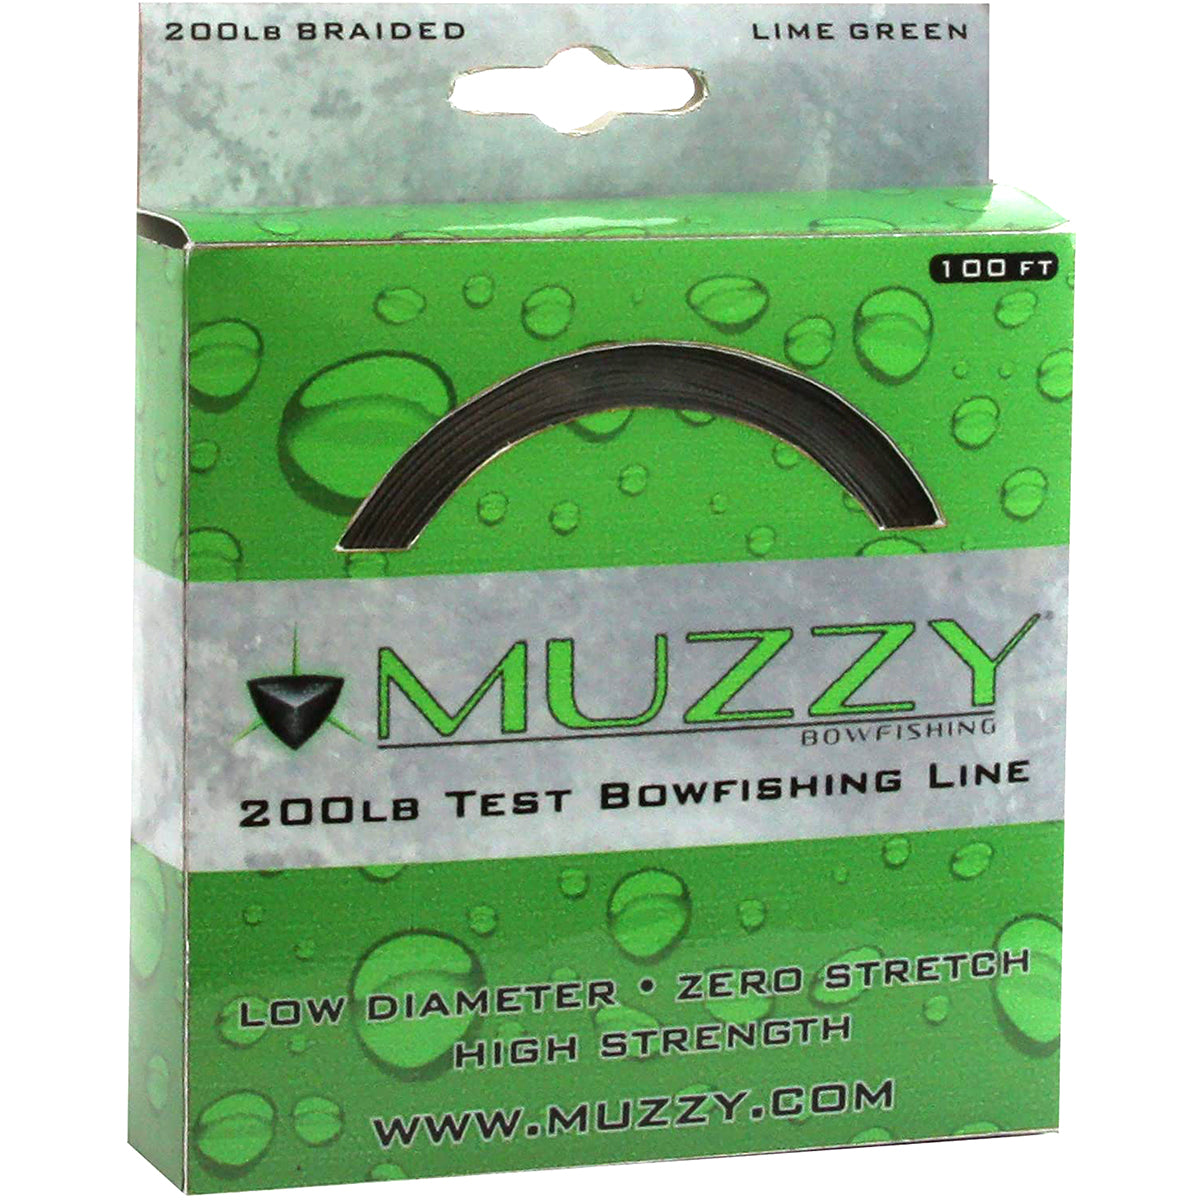 Muzzy Bowfishing Lime Green 200# Braided Bowfishing Line - 100 ft. Spool Muzzy